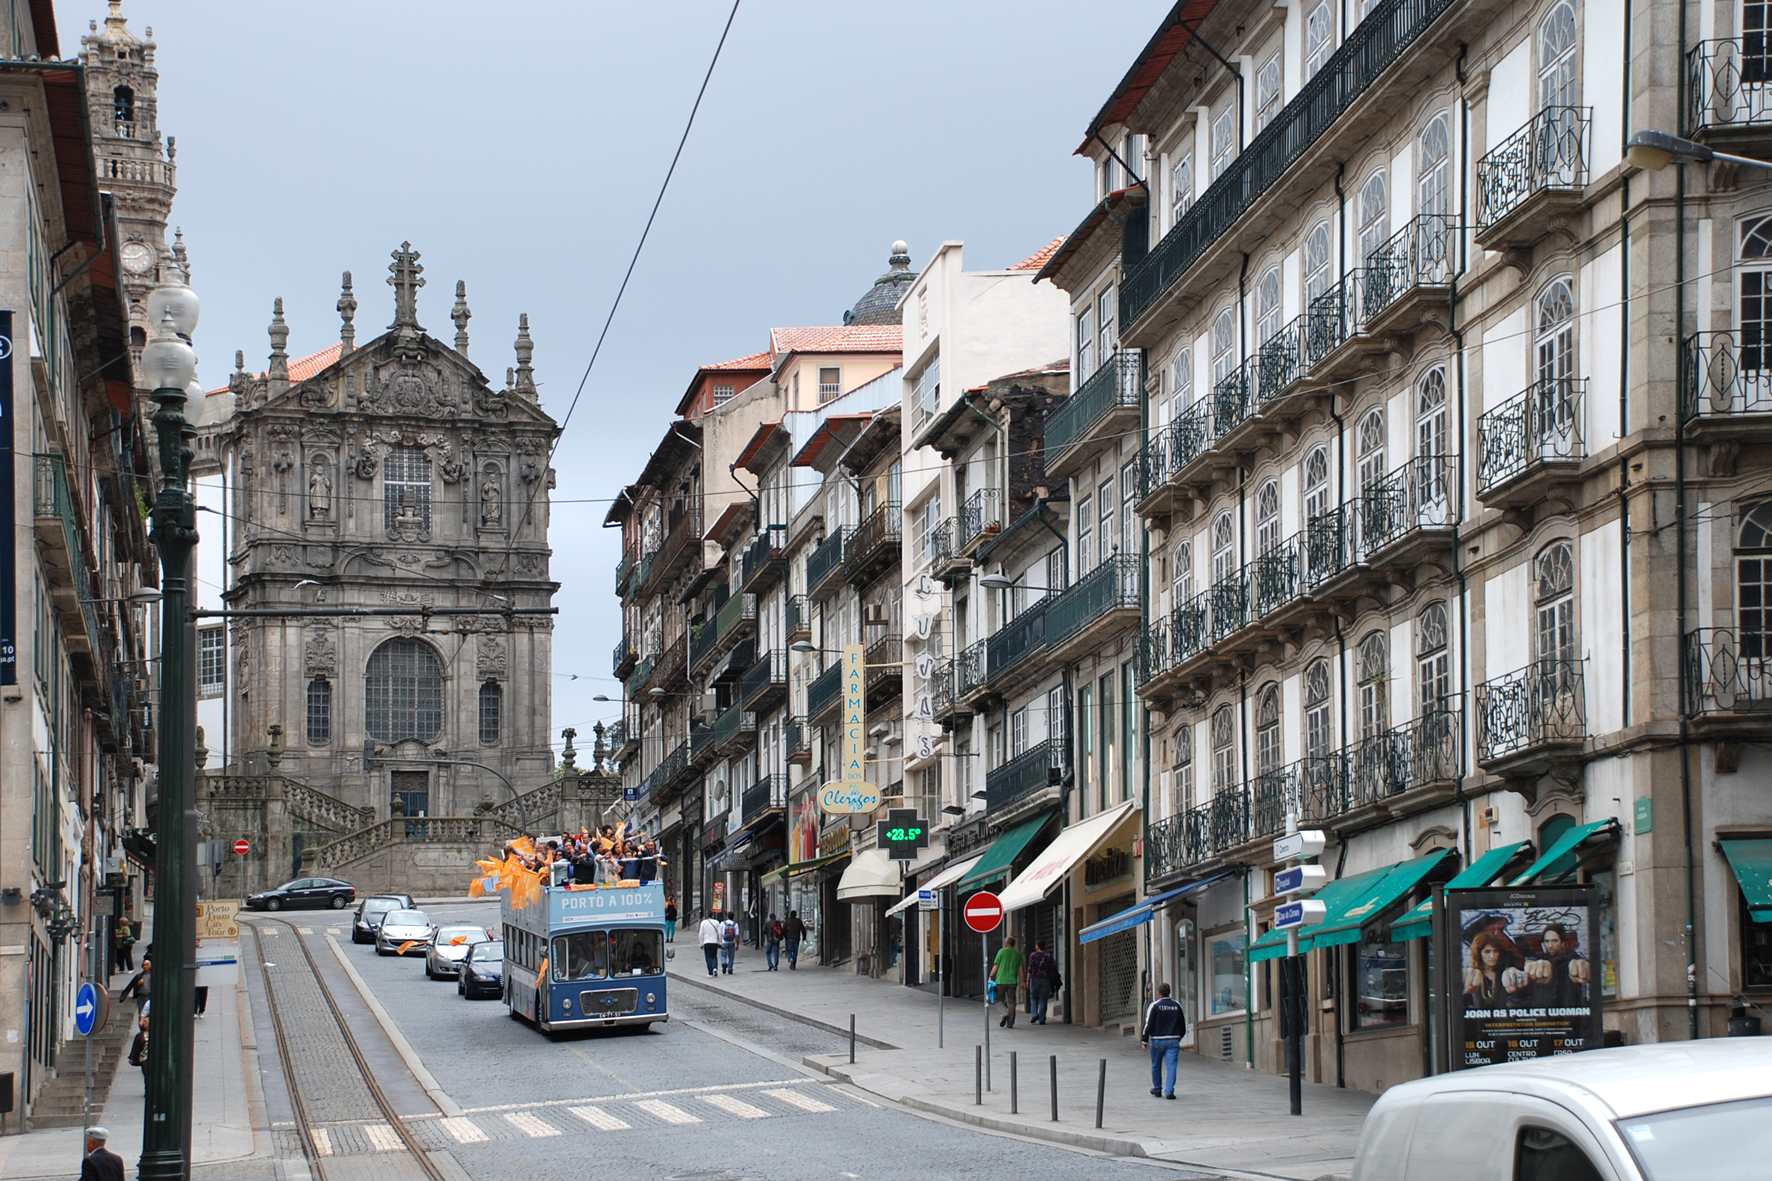 Фотография №25 - город Порту в Португалии